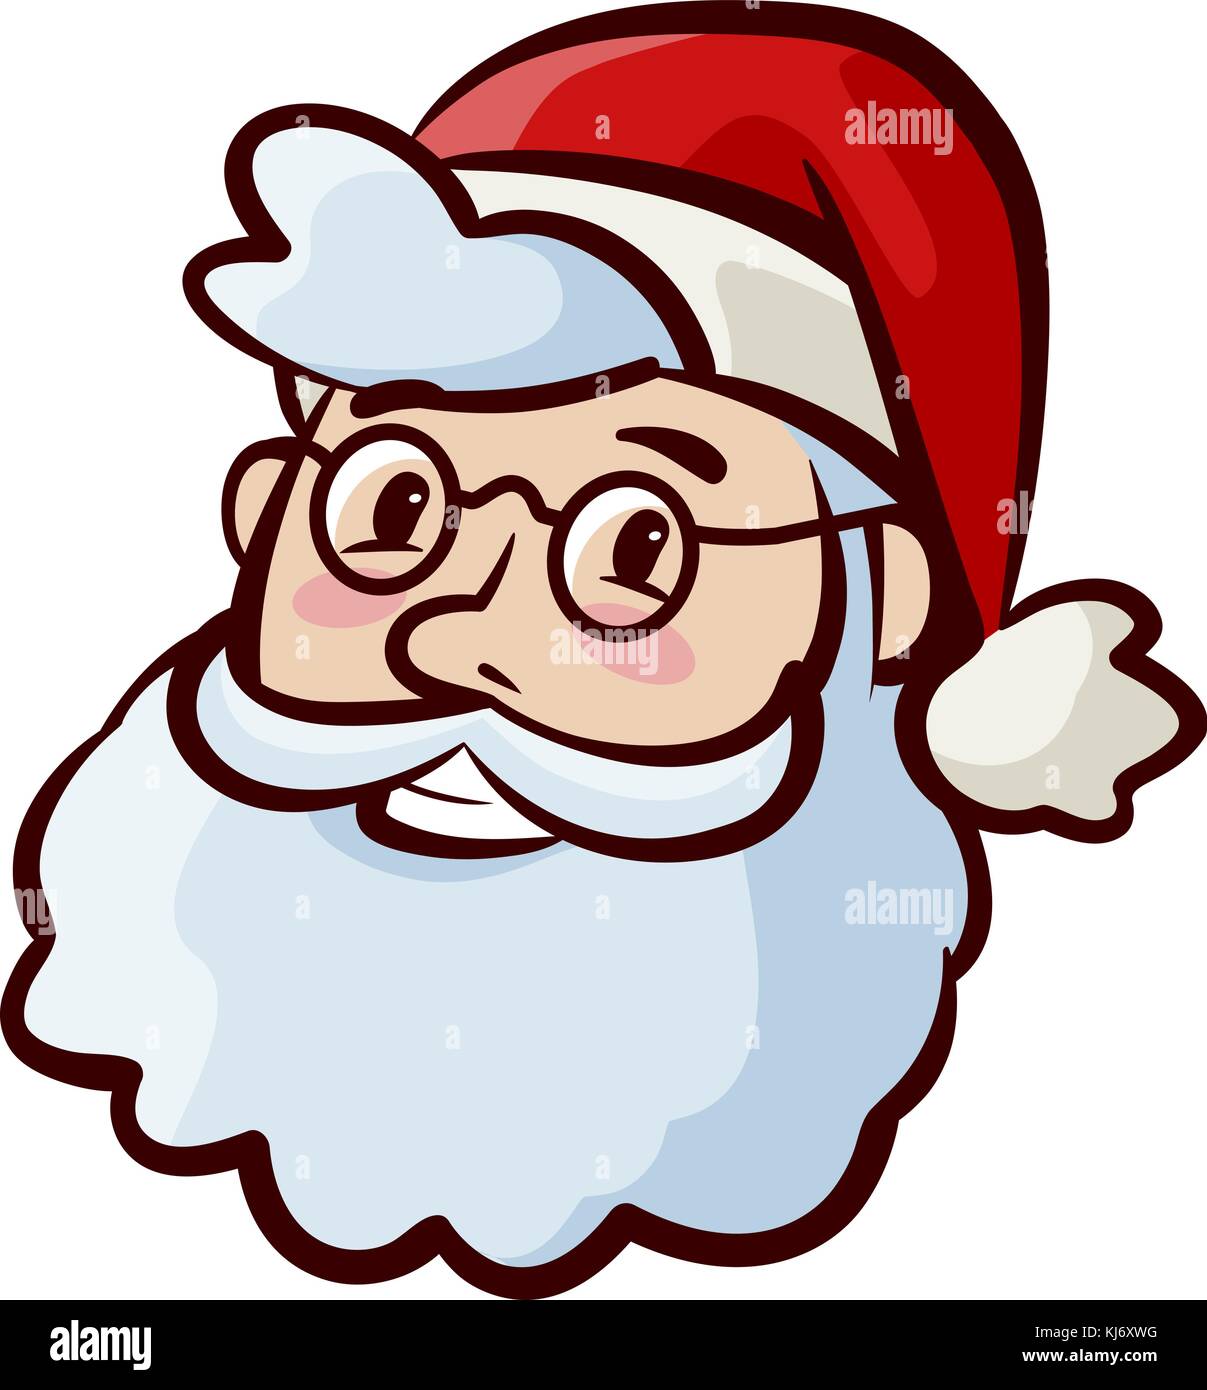 Portrait of happy cute Santa Claus in hat. Christmas, xmas symbol. Cartoon vector illustration Stock Vector